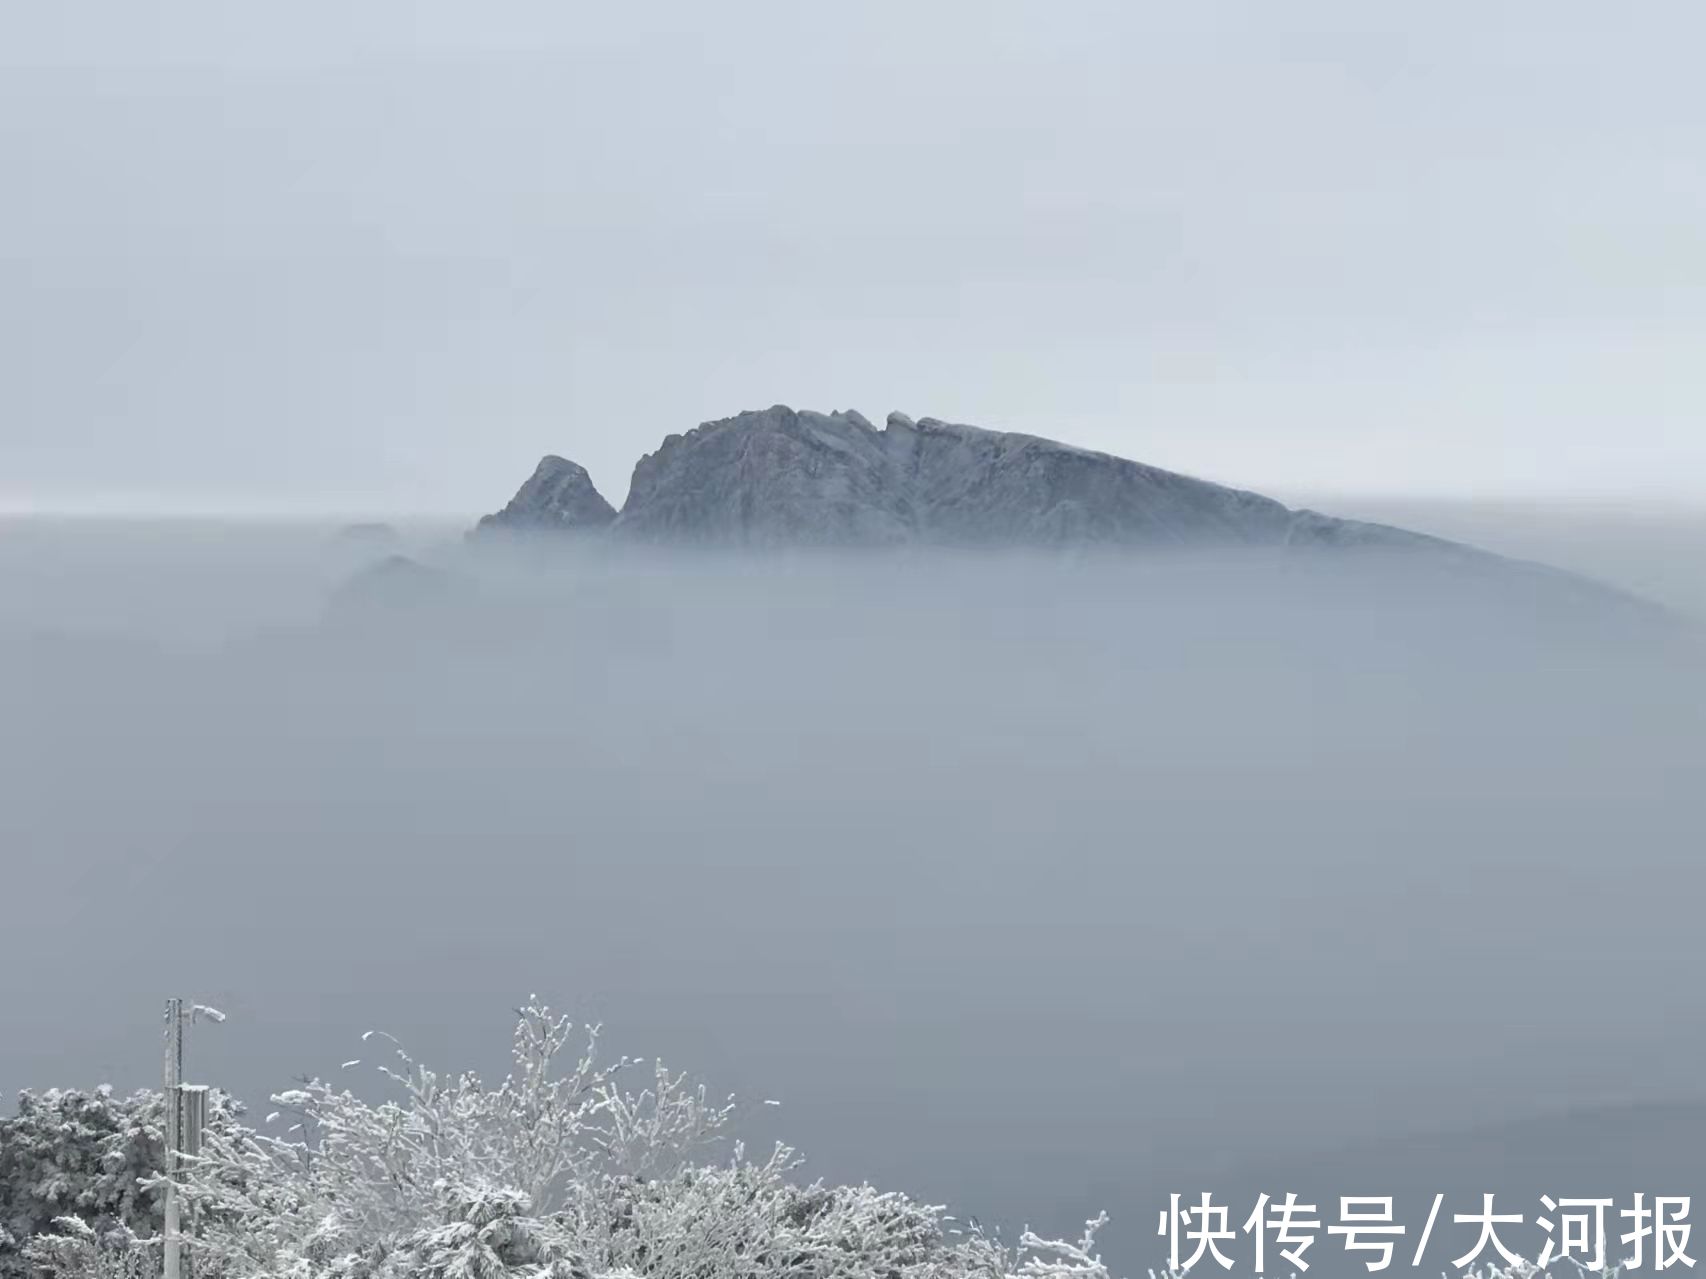 嵩山|罕见奇观 雾凇和云海齐现嵩山